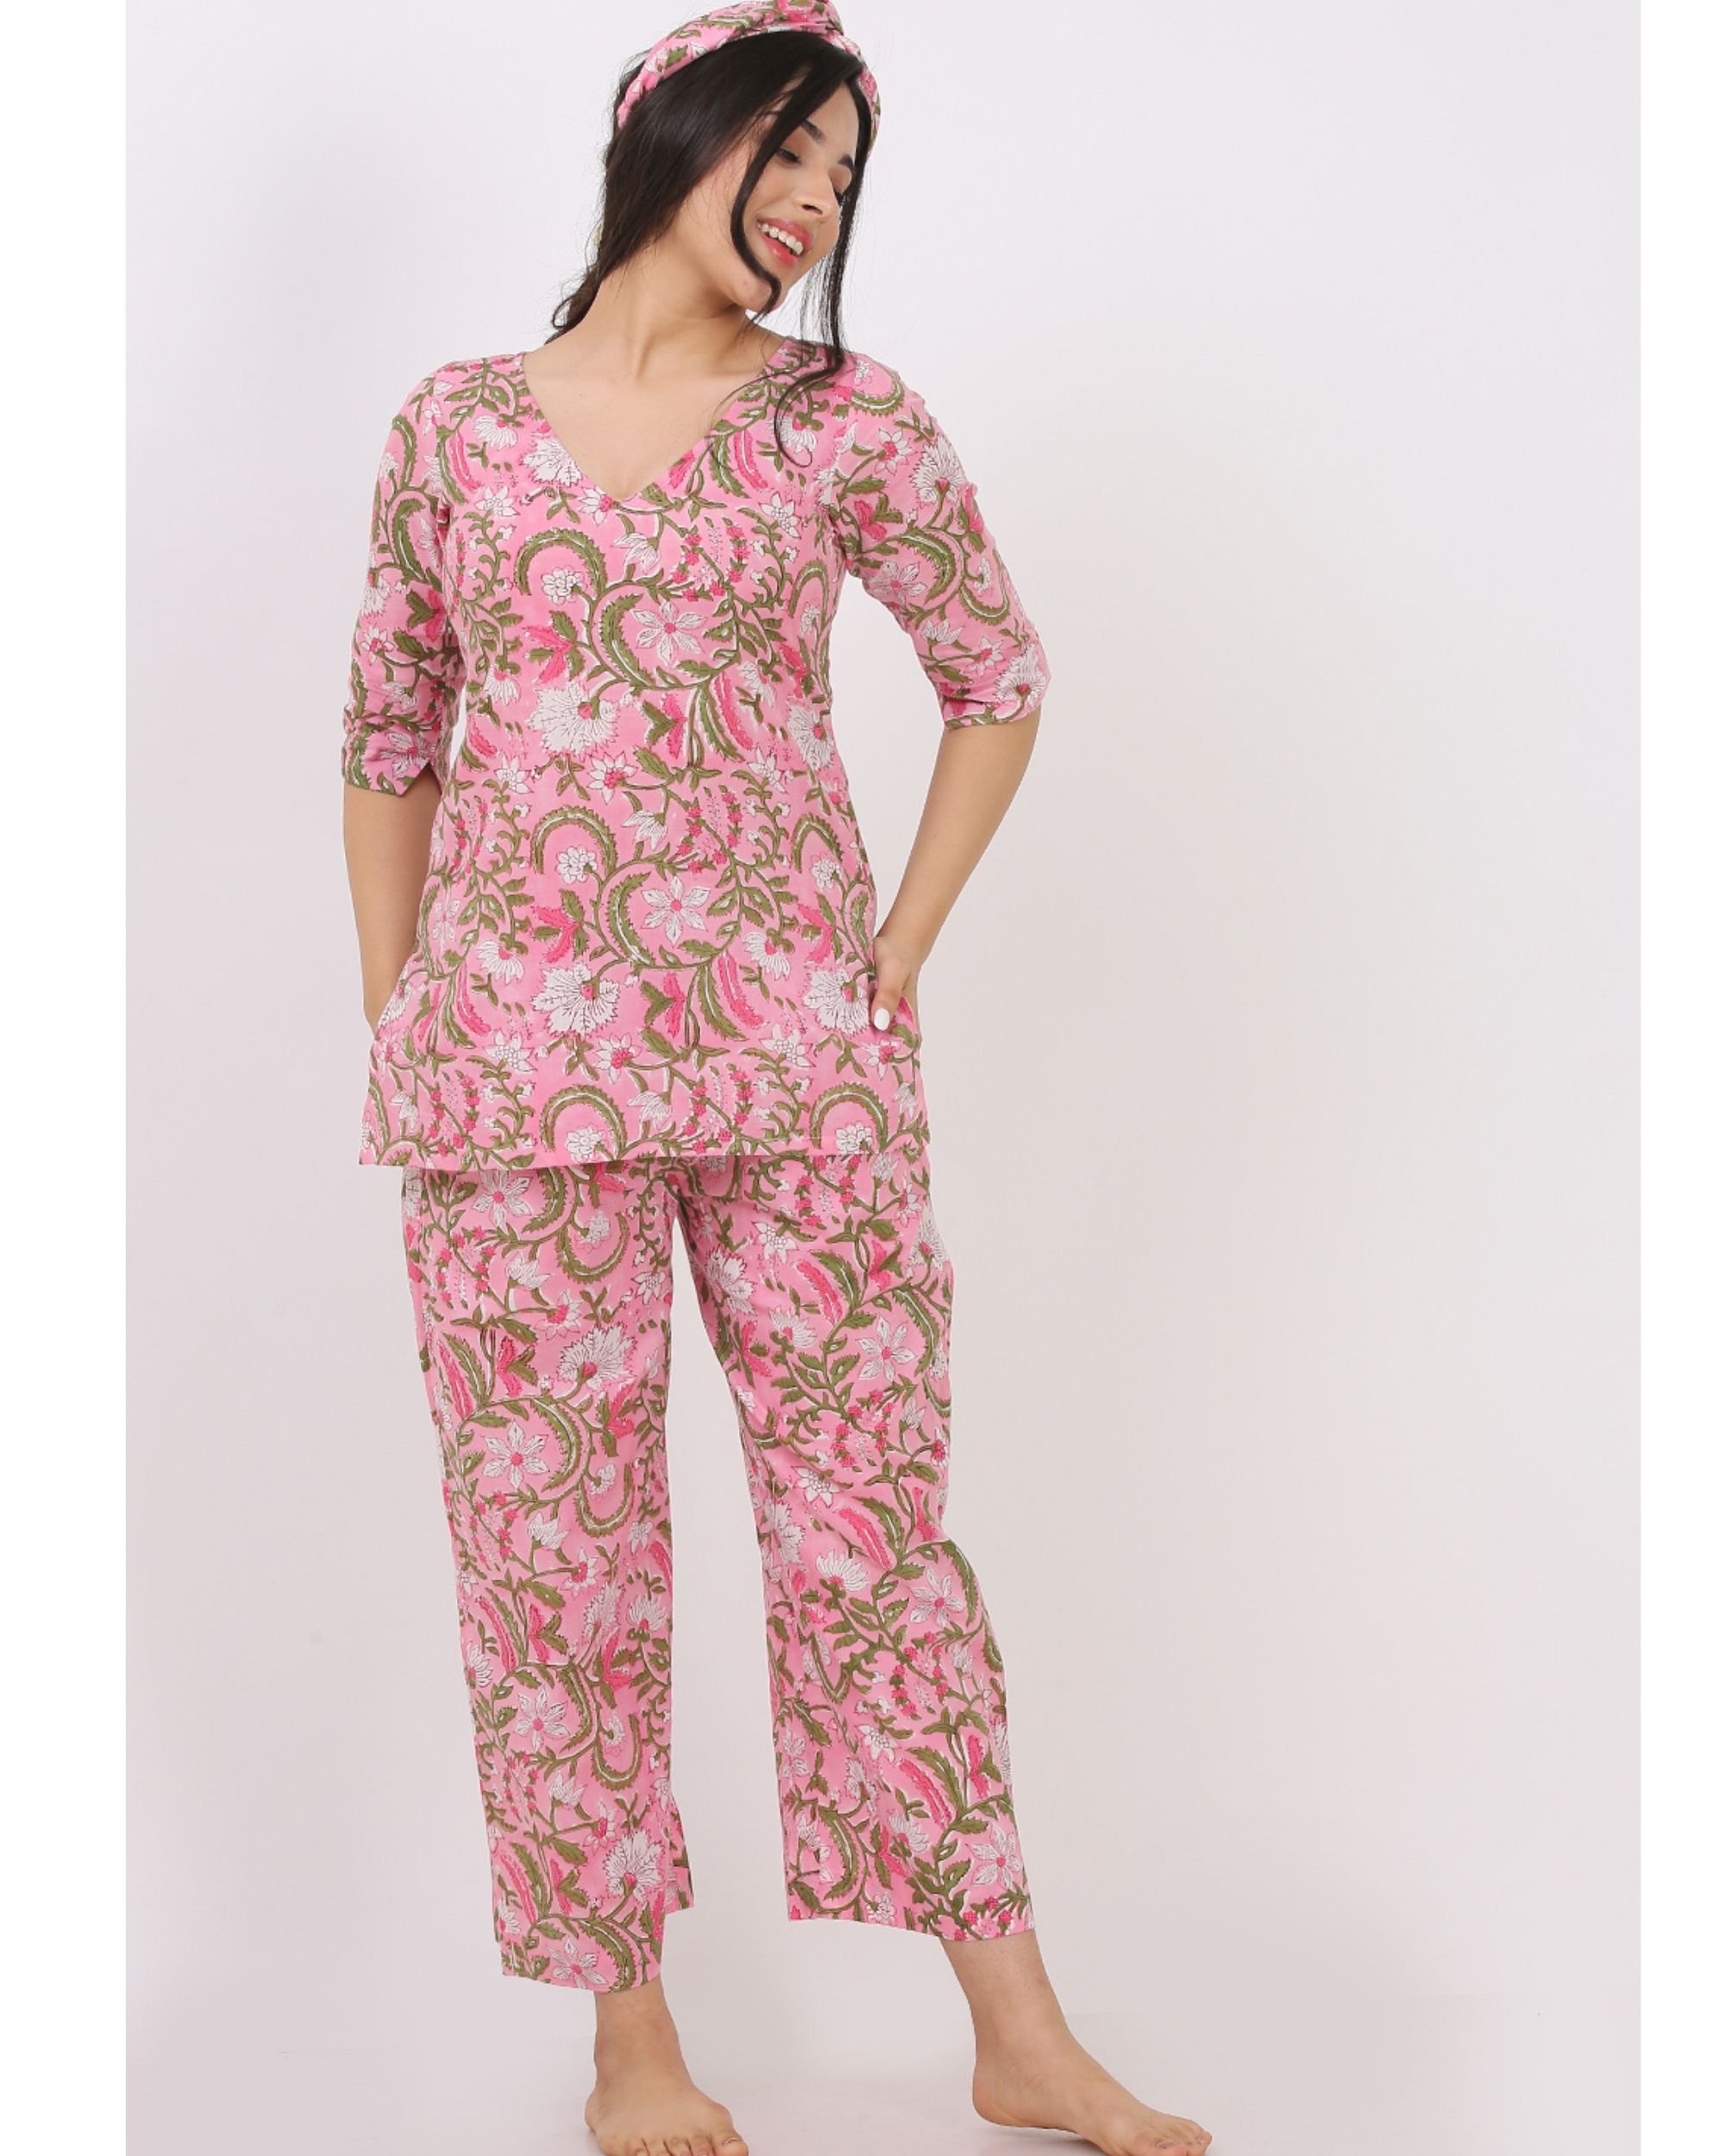 Pink short printed kurta and pyjama with hair band - set of three